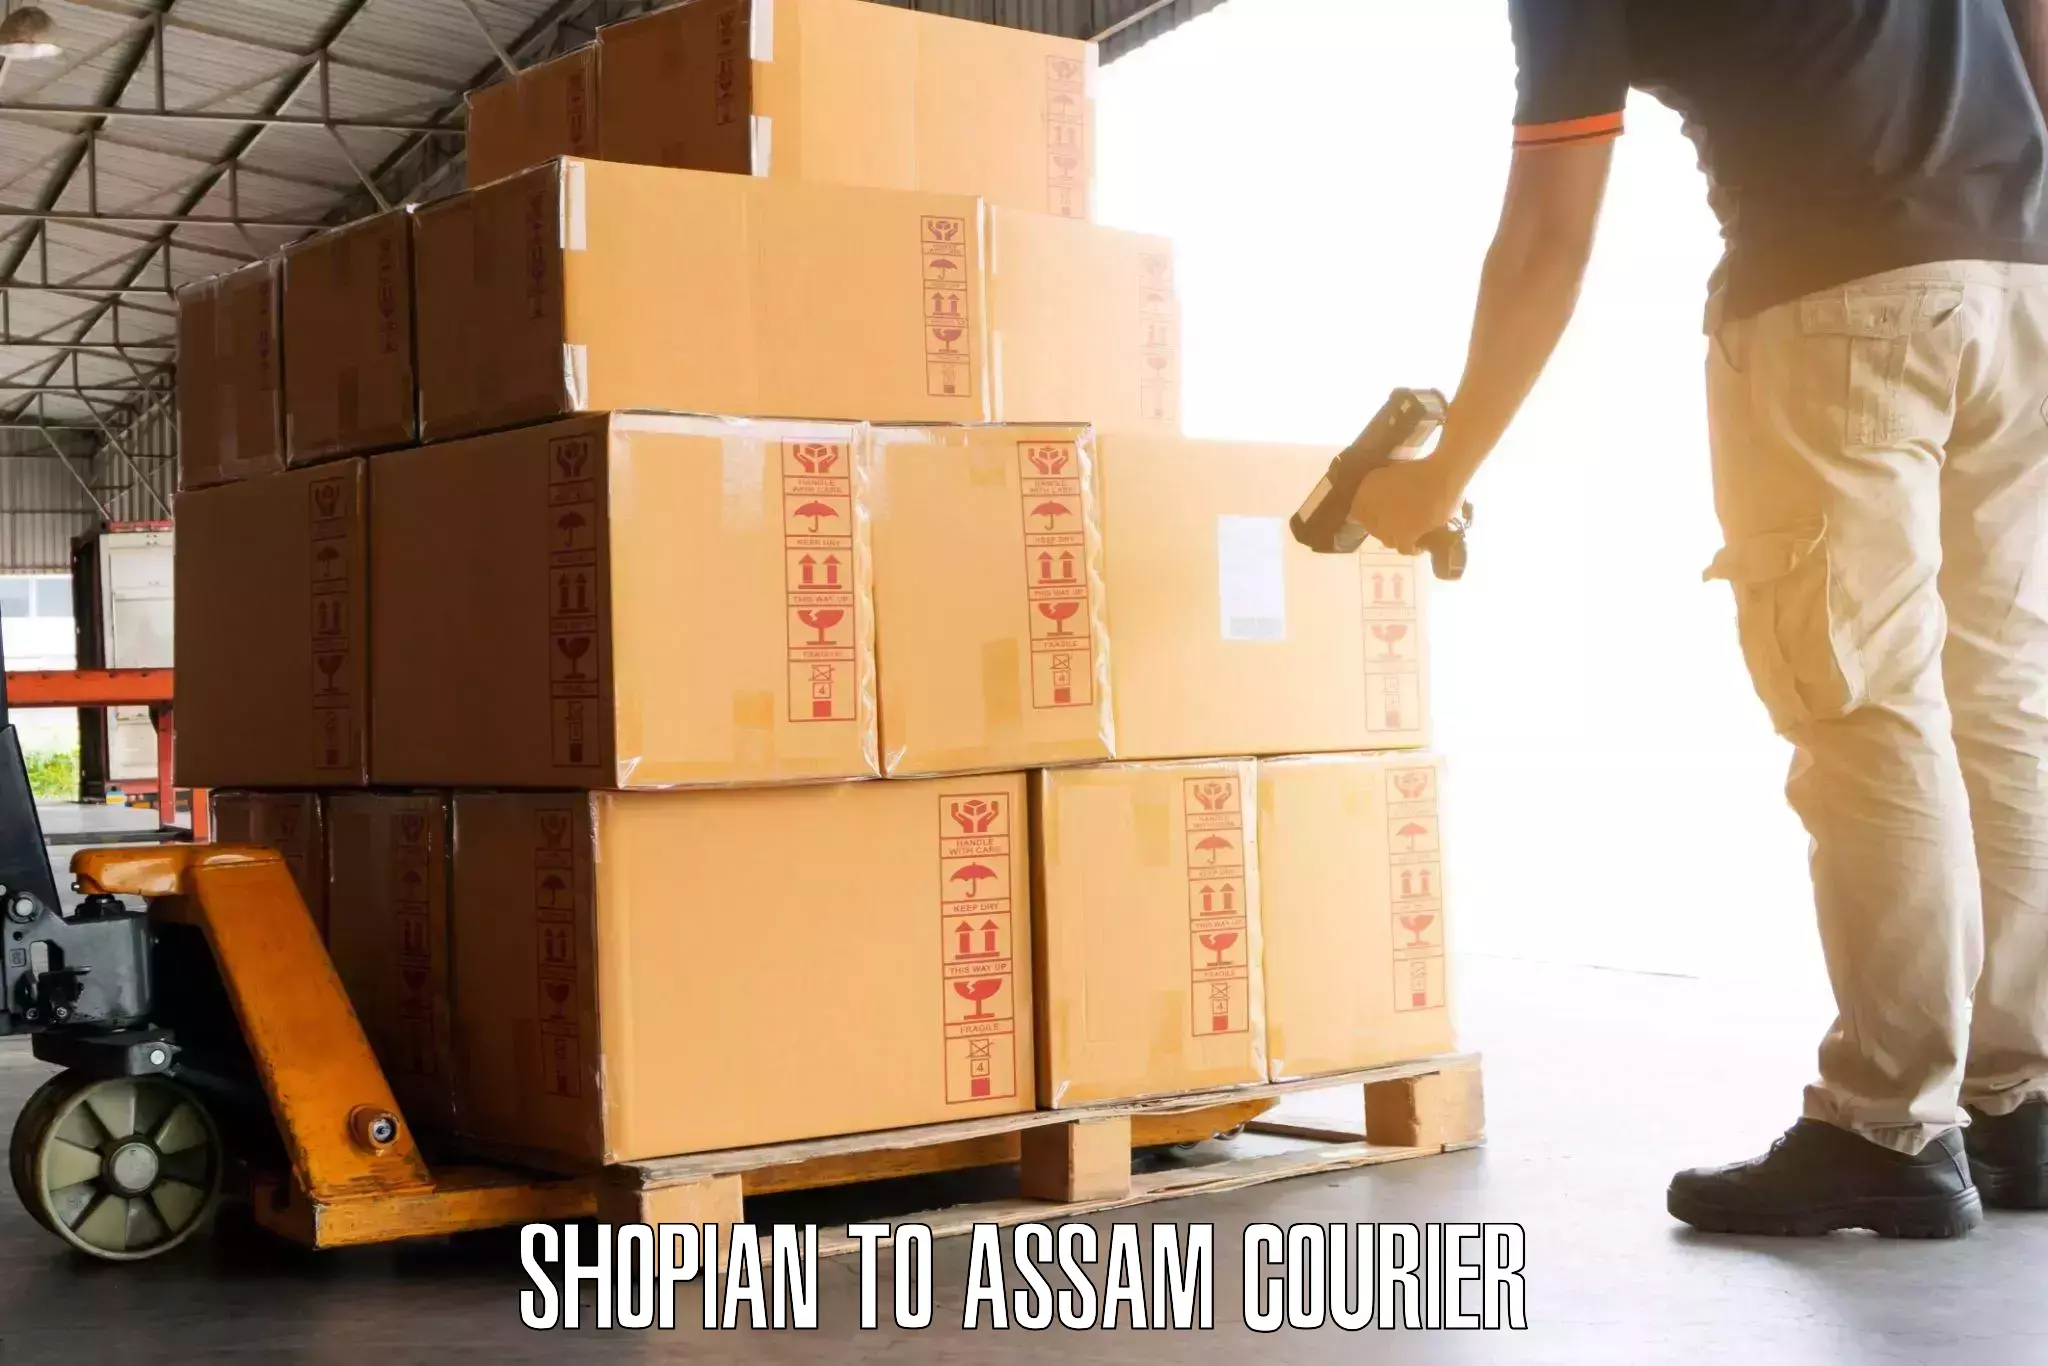 Baggage transport network Shopian to Baksha Bodoland